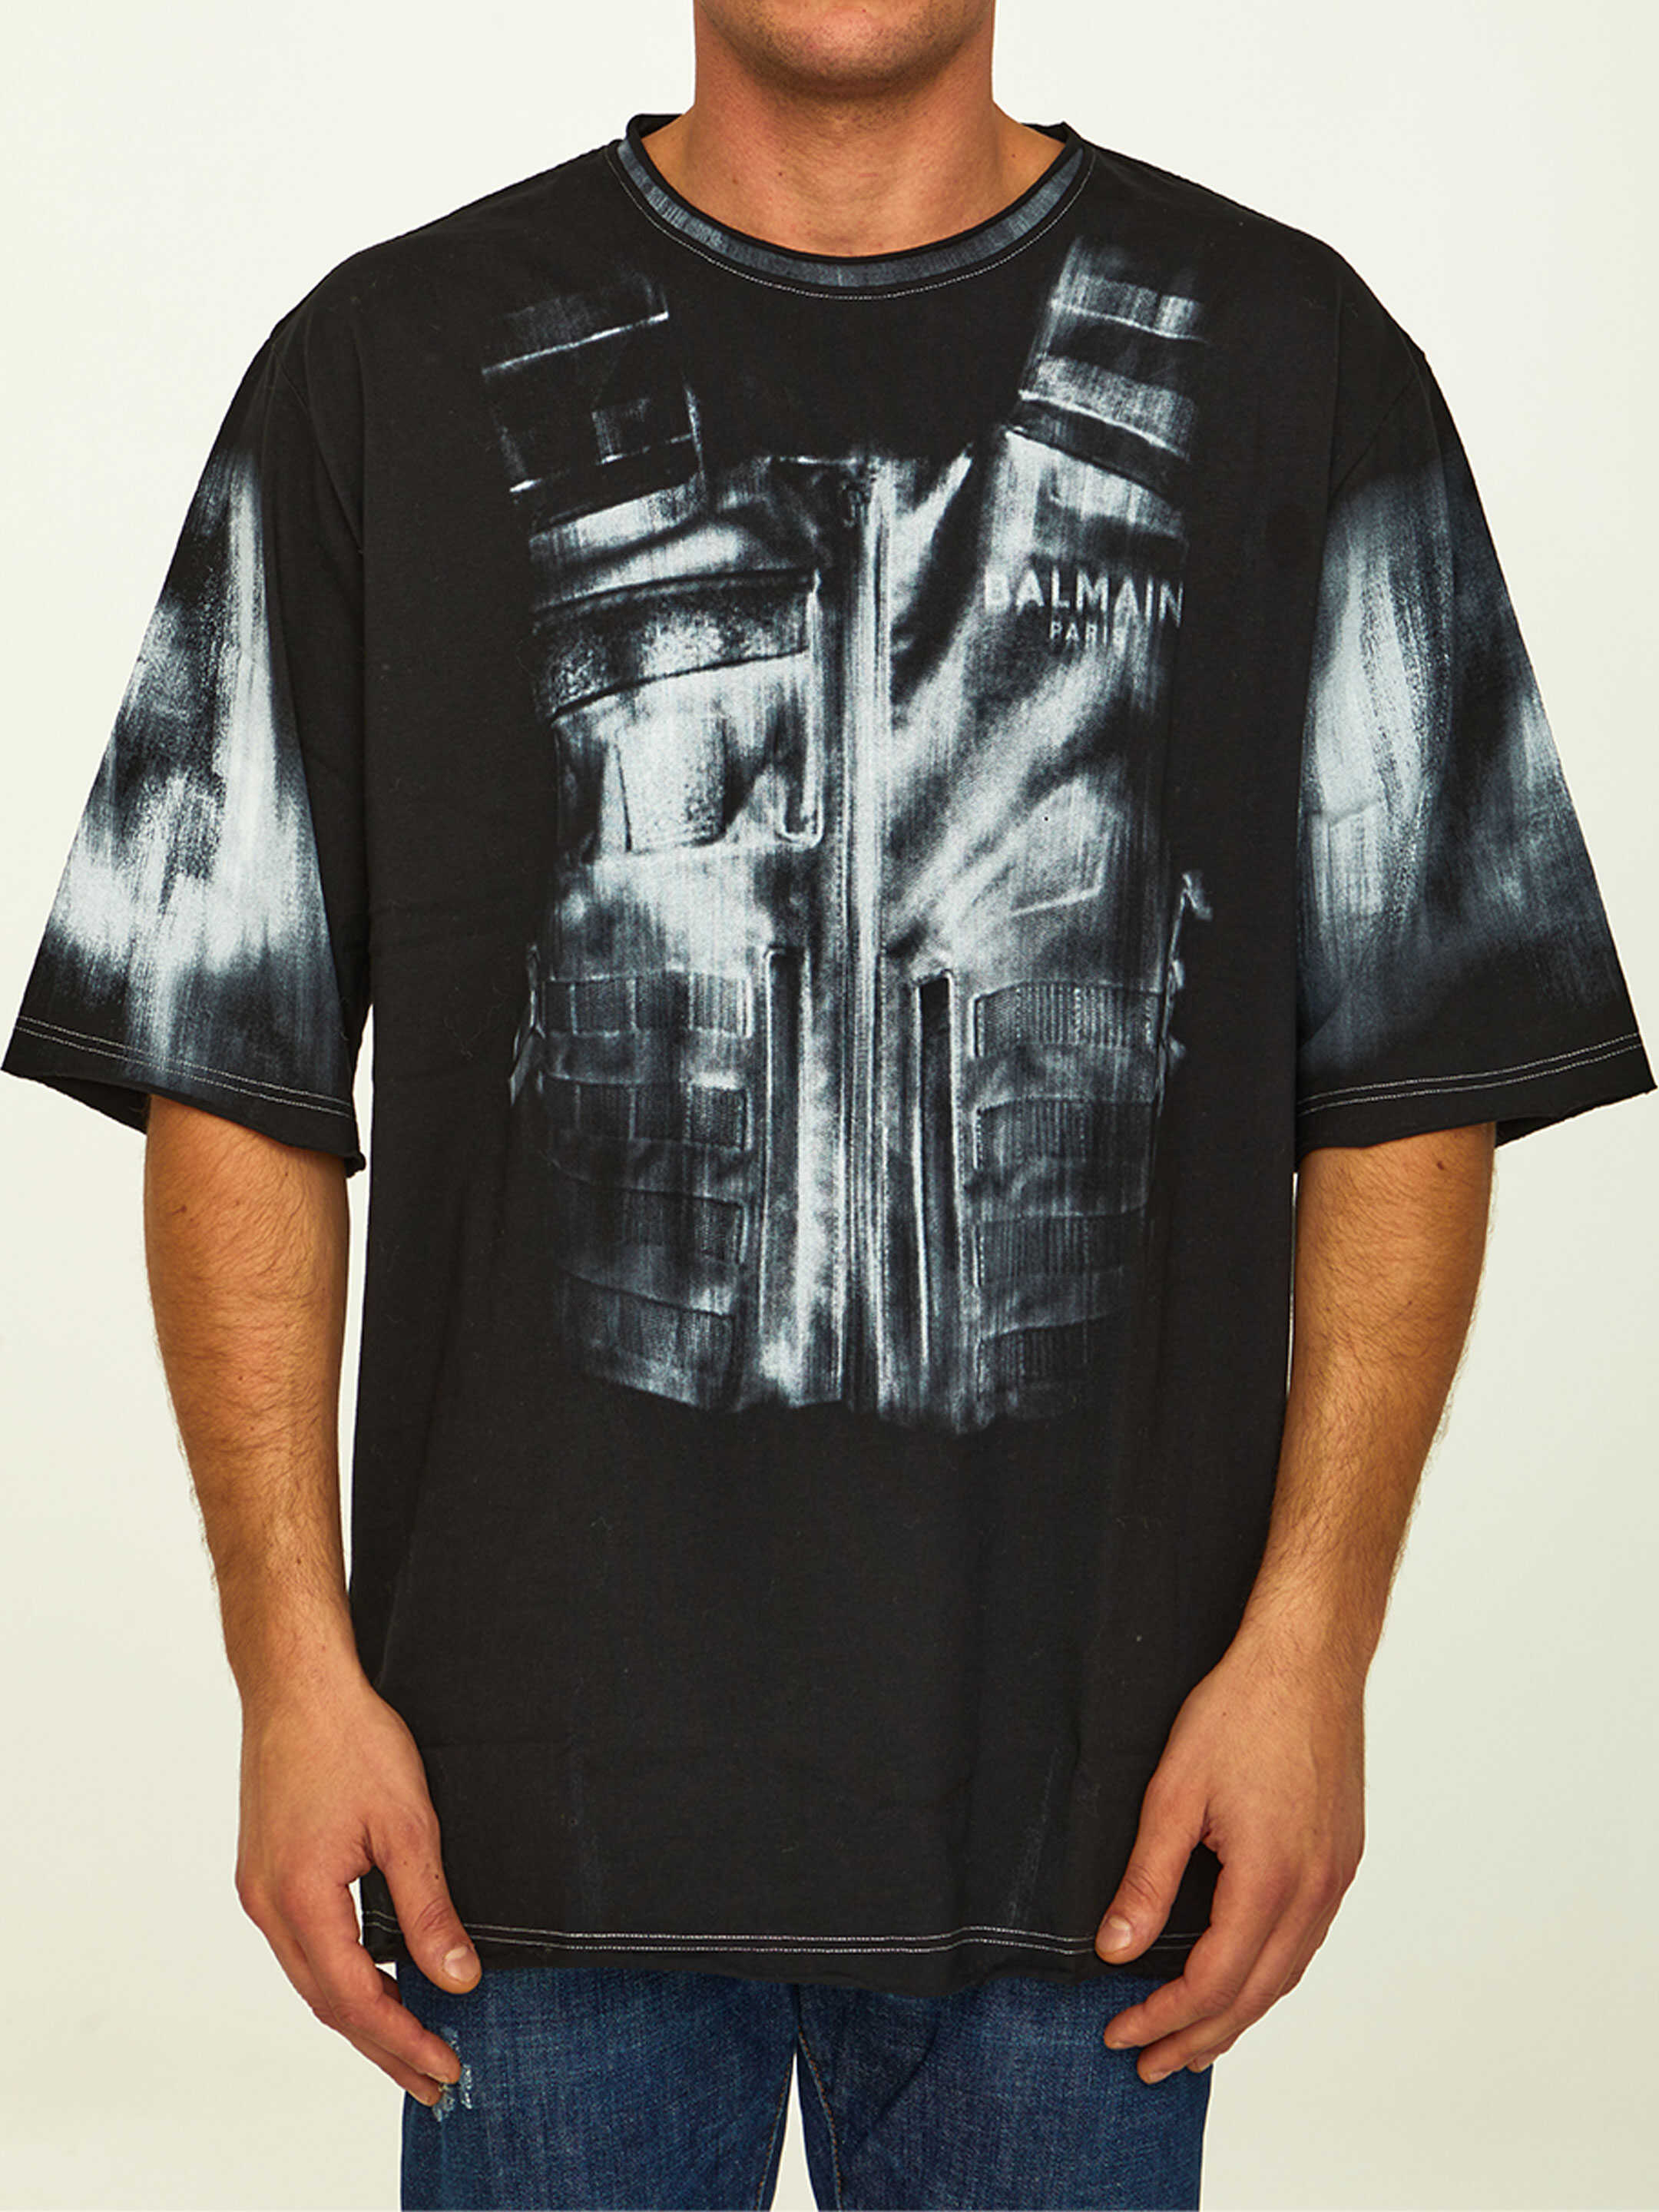 Balmain Printed T-Shirt Black/white image6